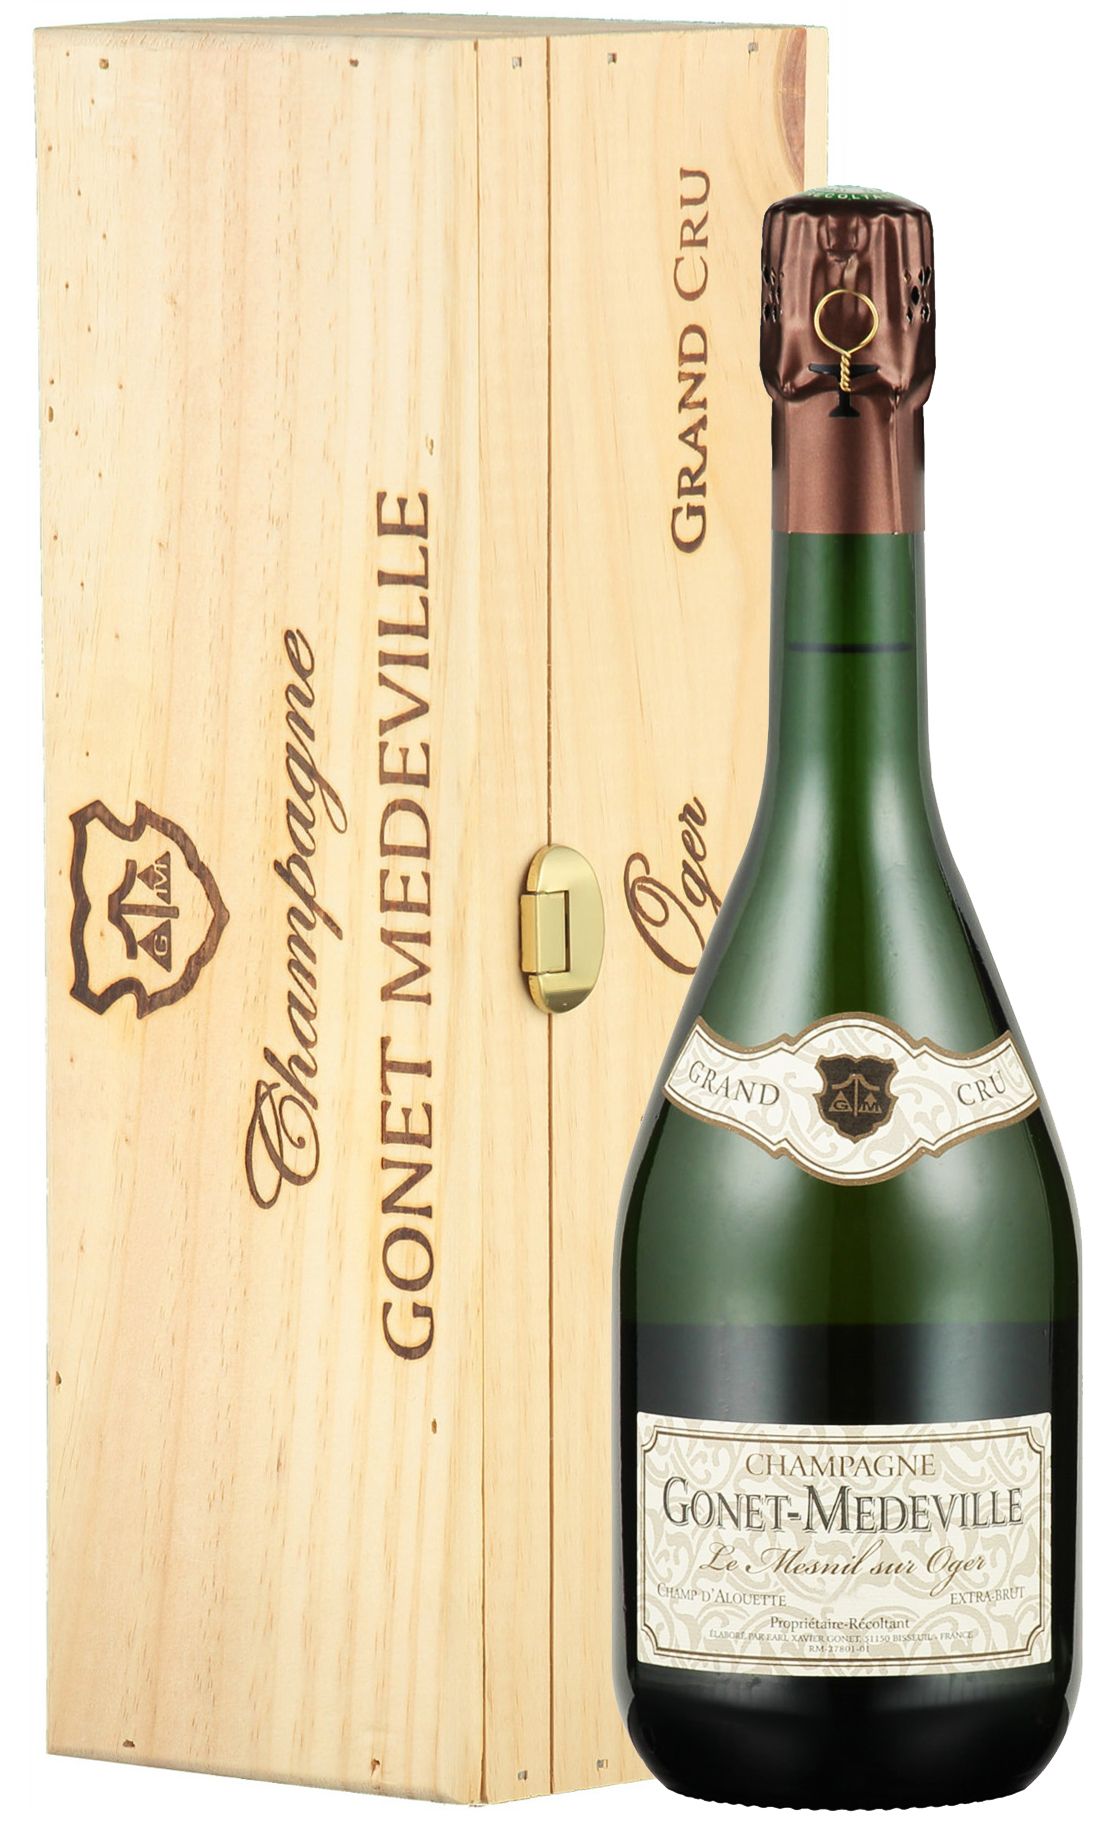 Gonet-Medeville, Champ d'Alouette Extra Brut Le Mesnil-Sur-Oger Grand Cru, 2004 (Gift Box)